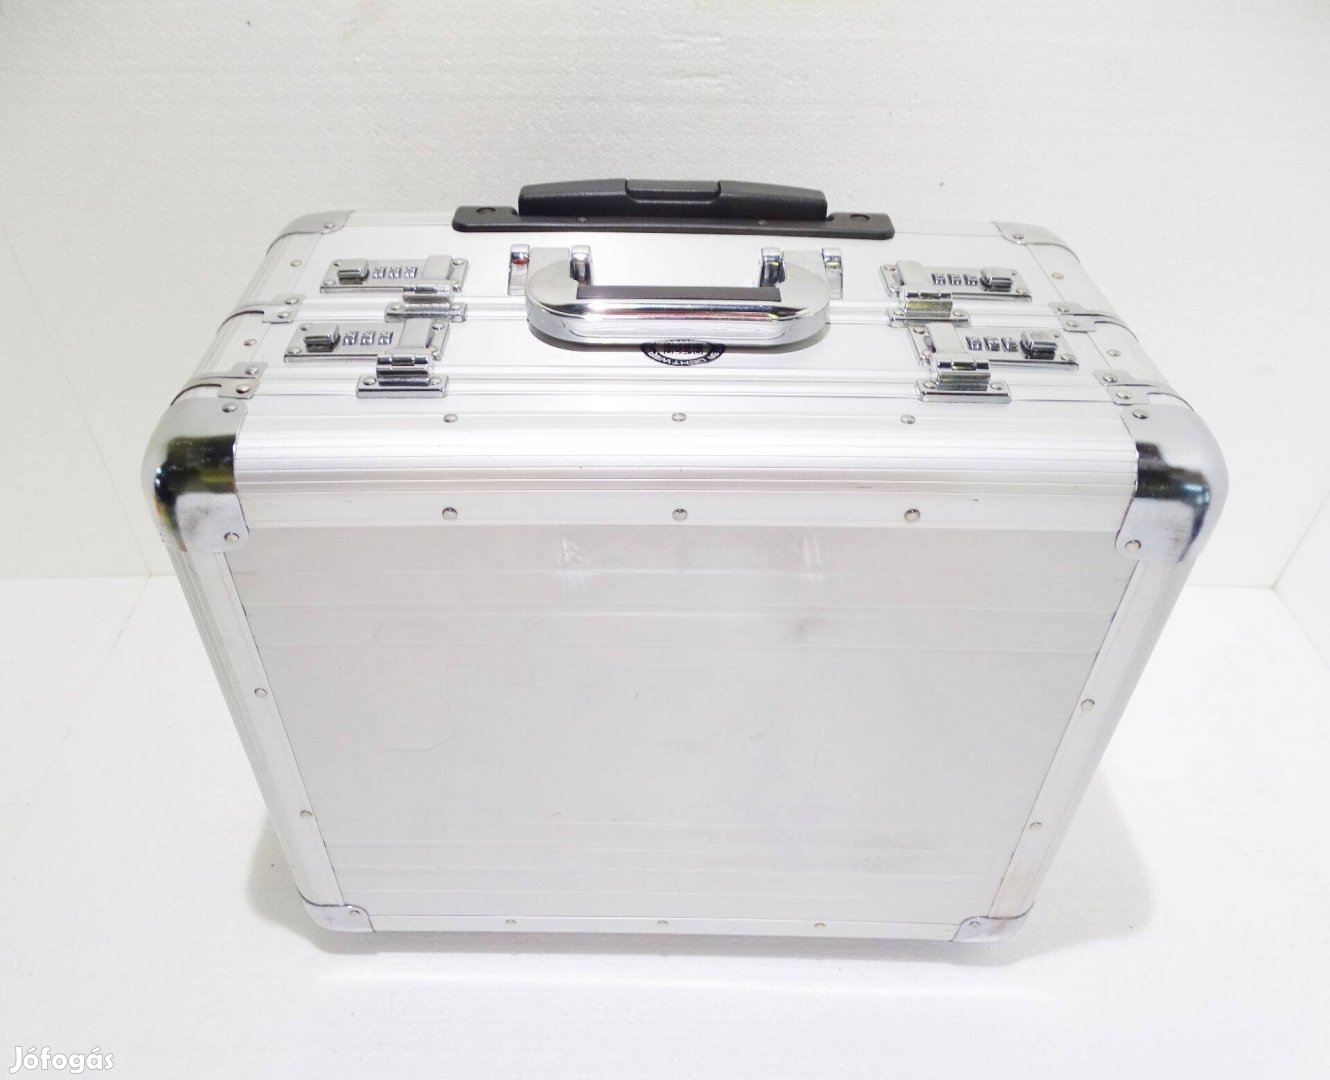 Alumaxx alu koffer táska bőrönd szerszámtartó láda tároló doboz box